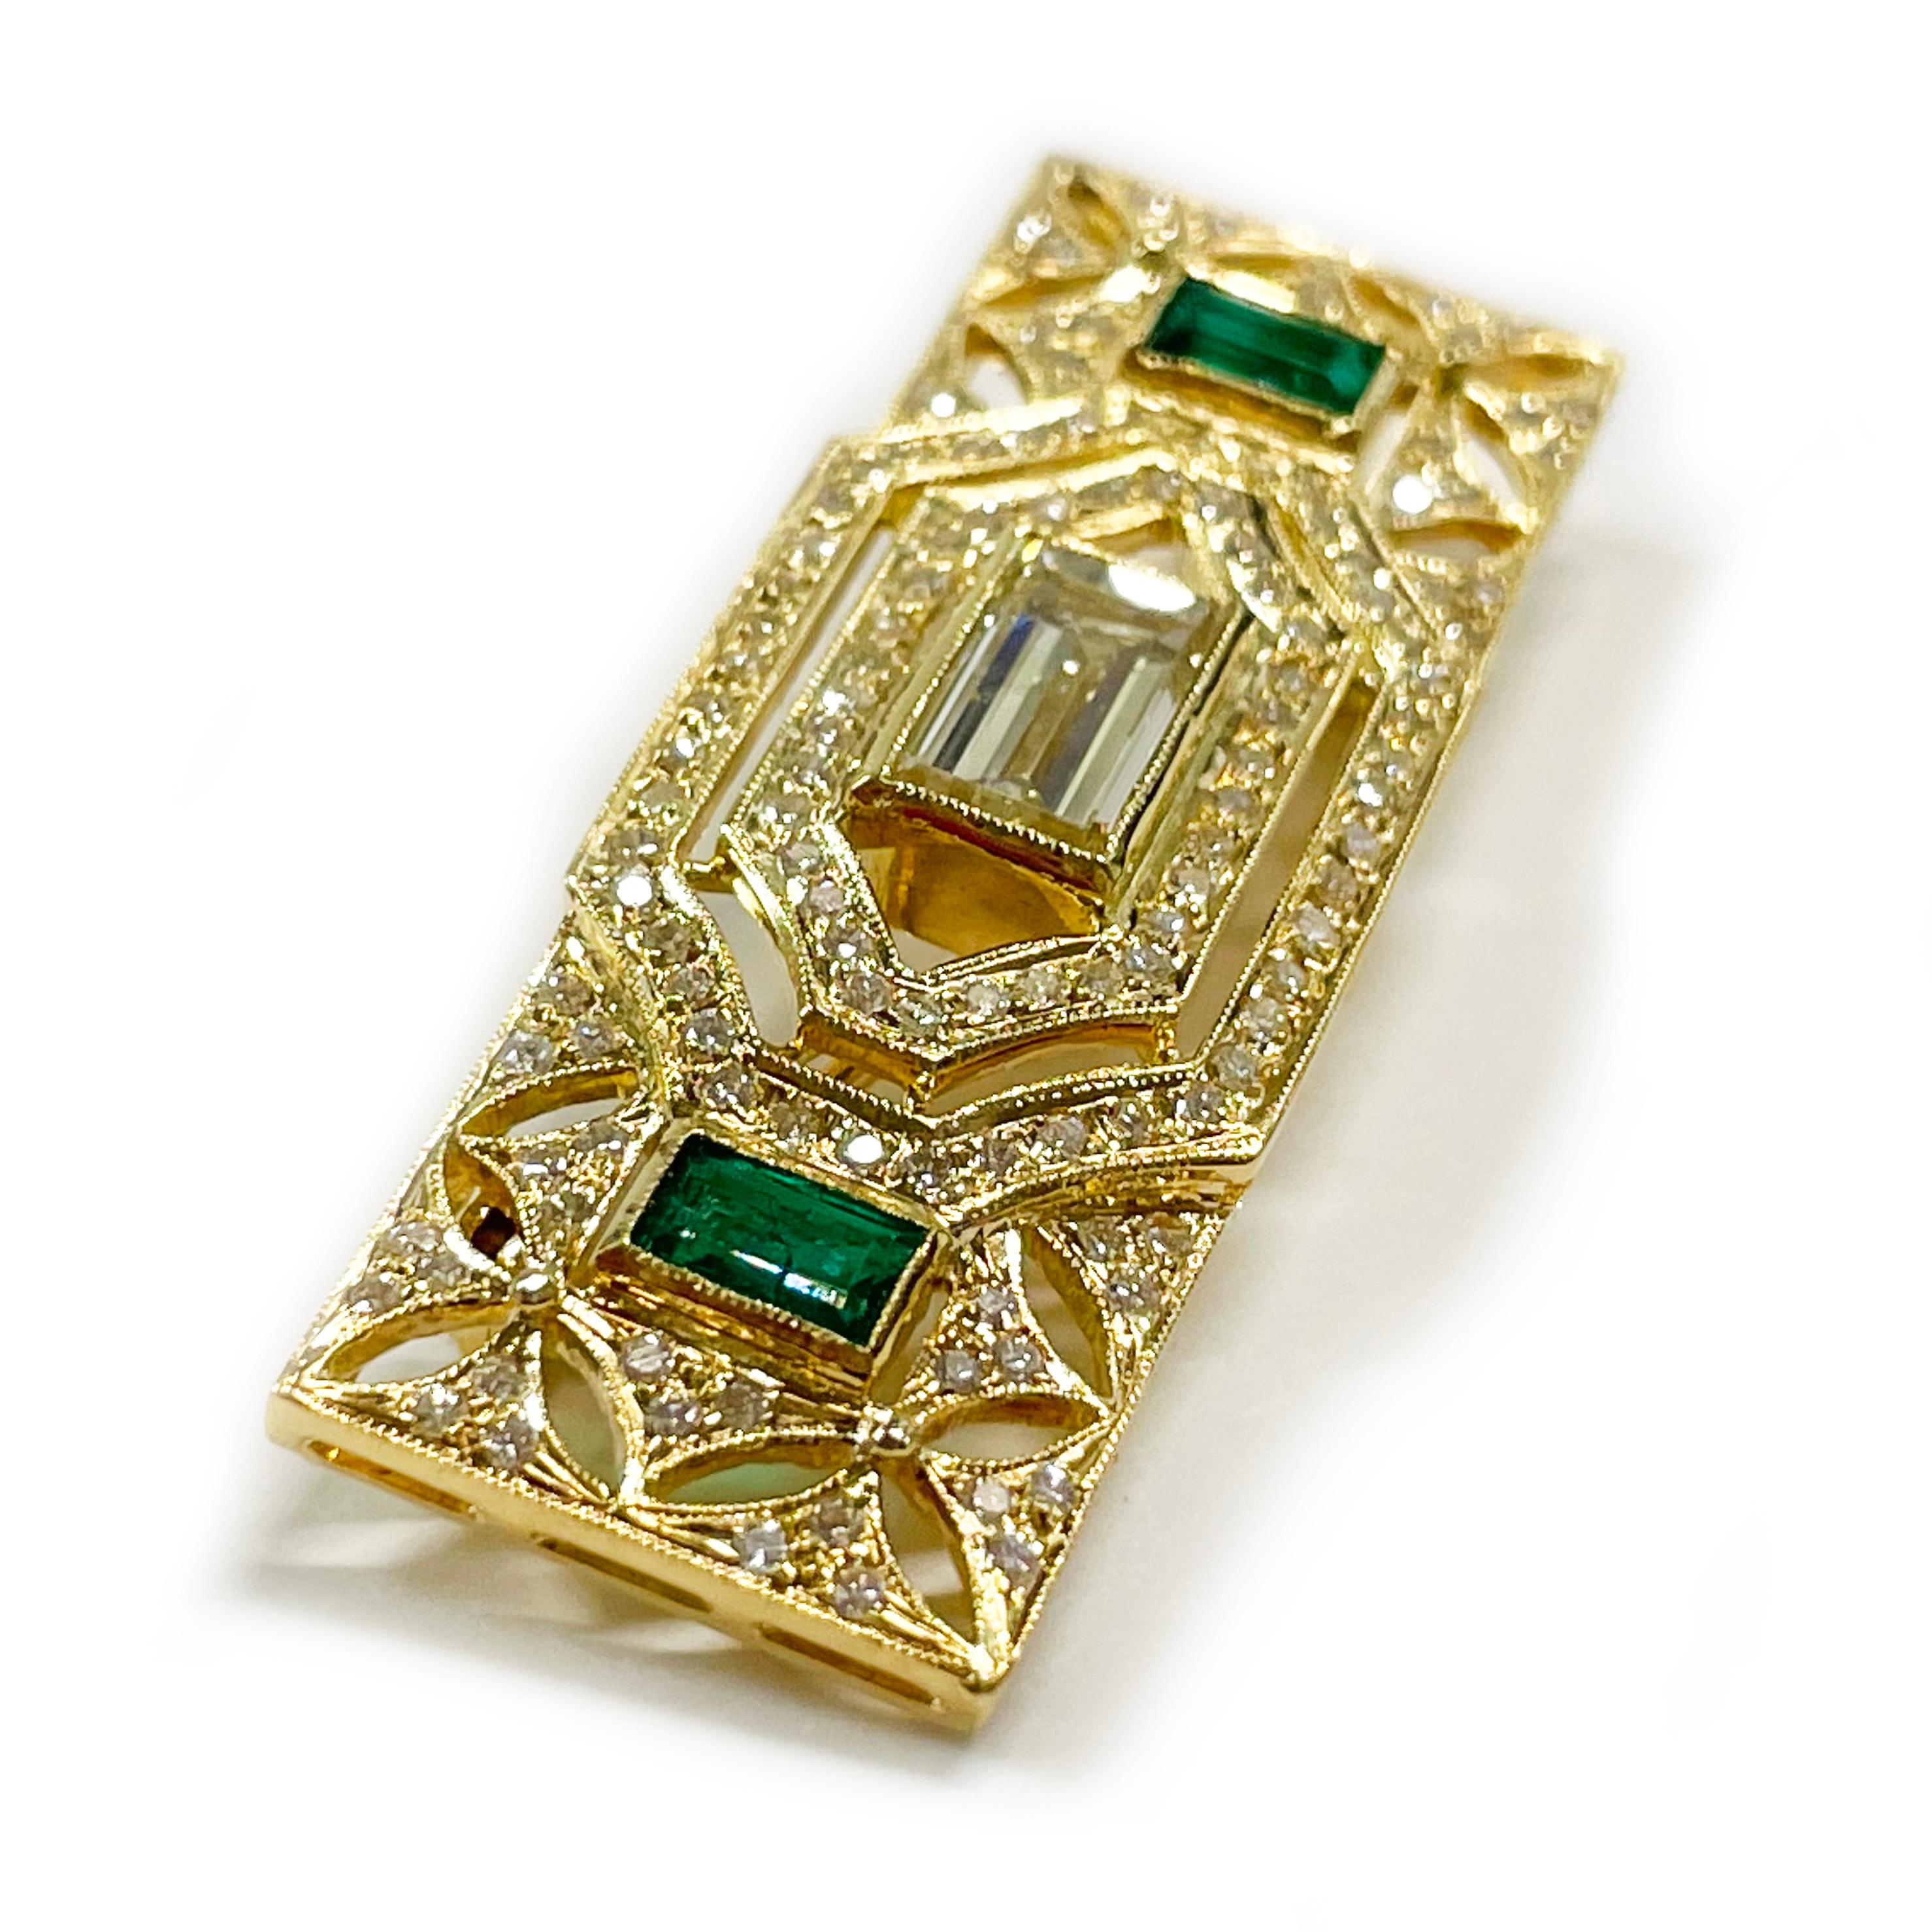 Art Deco 18 Karat Art Gelbgold Smaragd Diamant Brosche Anhänger. Dieses atemberaubende Schmuckstück besteht aus zwei grünen Smaragden im Smaragdschliff, einem Diamanten im Stufenschliff und einhundertdreißig runden Diamanten, die in Gelbgold gefasst